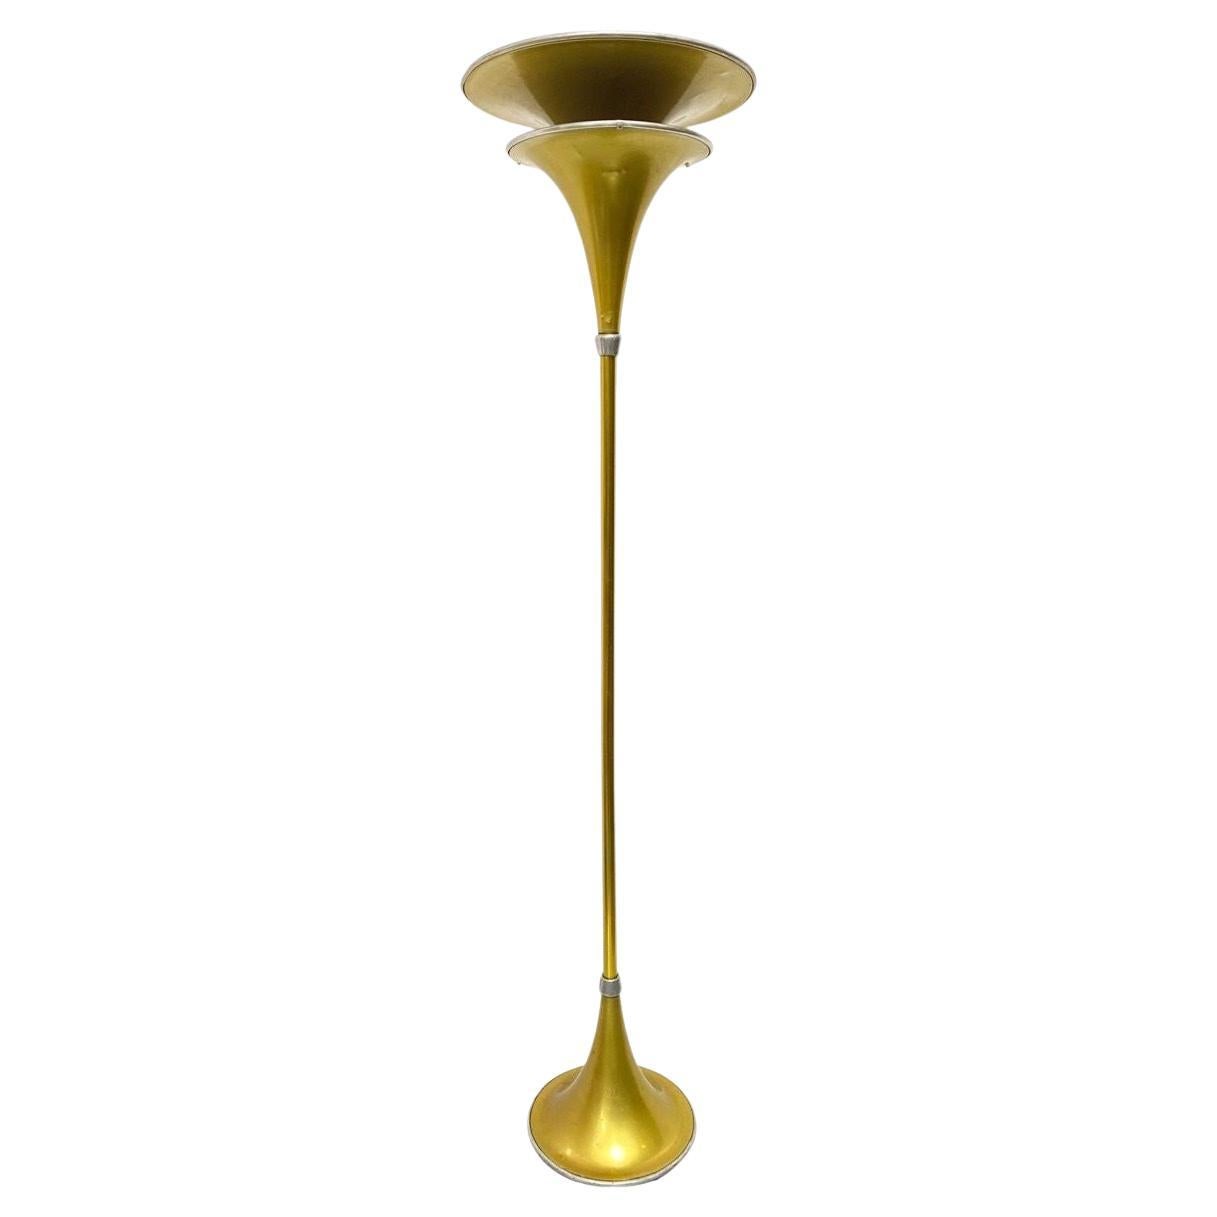 Art Deco Anodized Gold-Tone Spun Aluminum Torchiere Floor Lamp